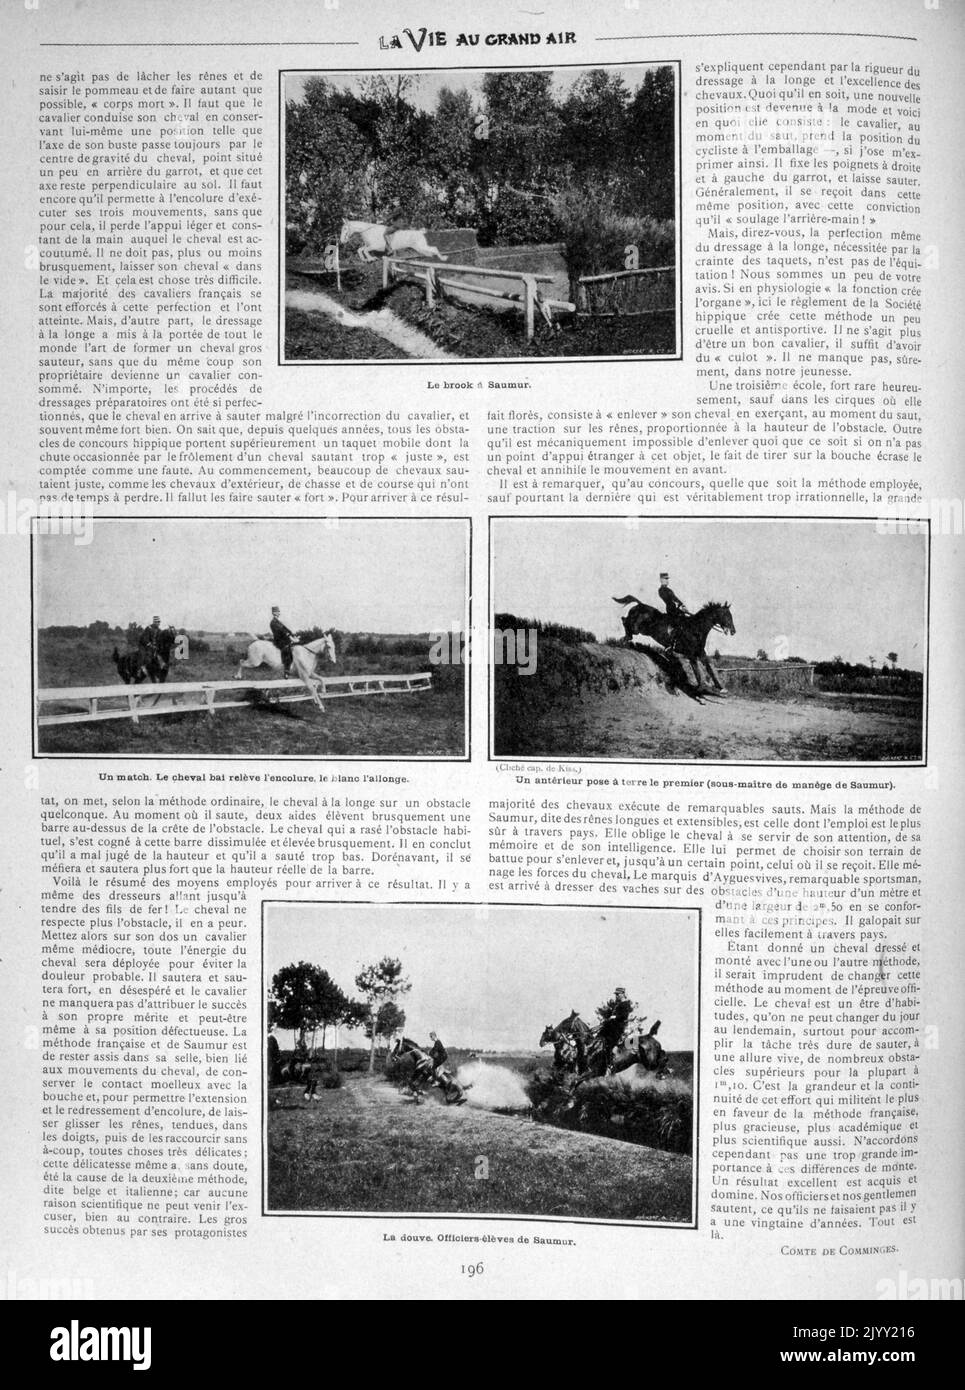 Französische Vintage-Fotografien zeigen die Dressur- und Pferdesport-Praxis der Armee 1902 Stockfoto